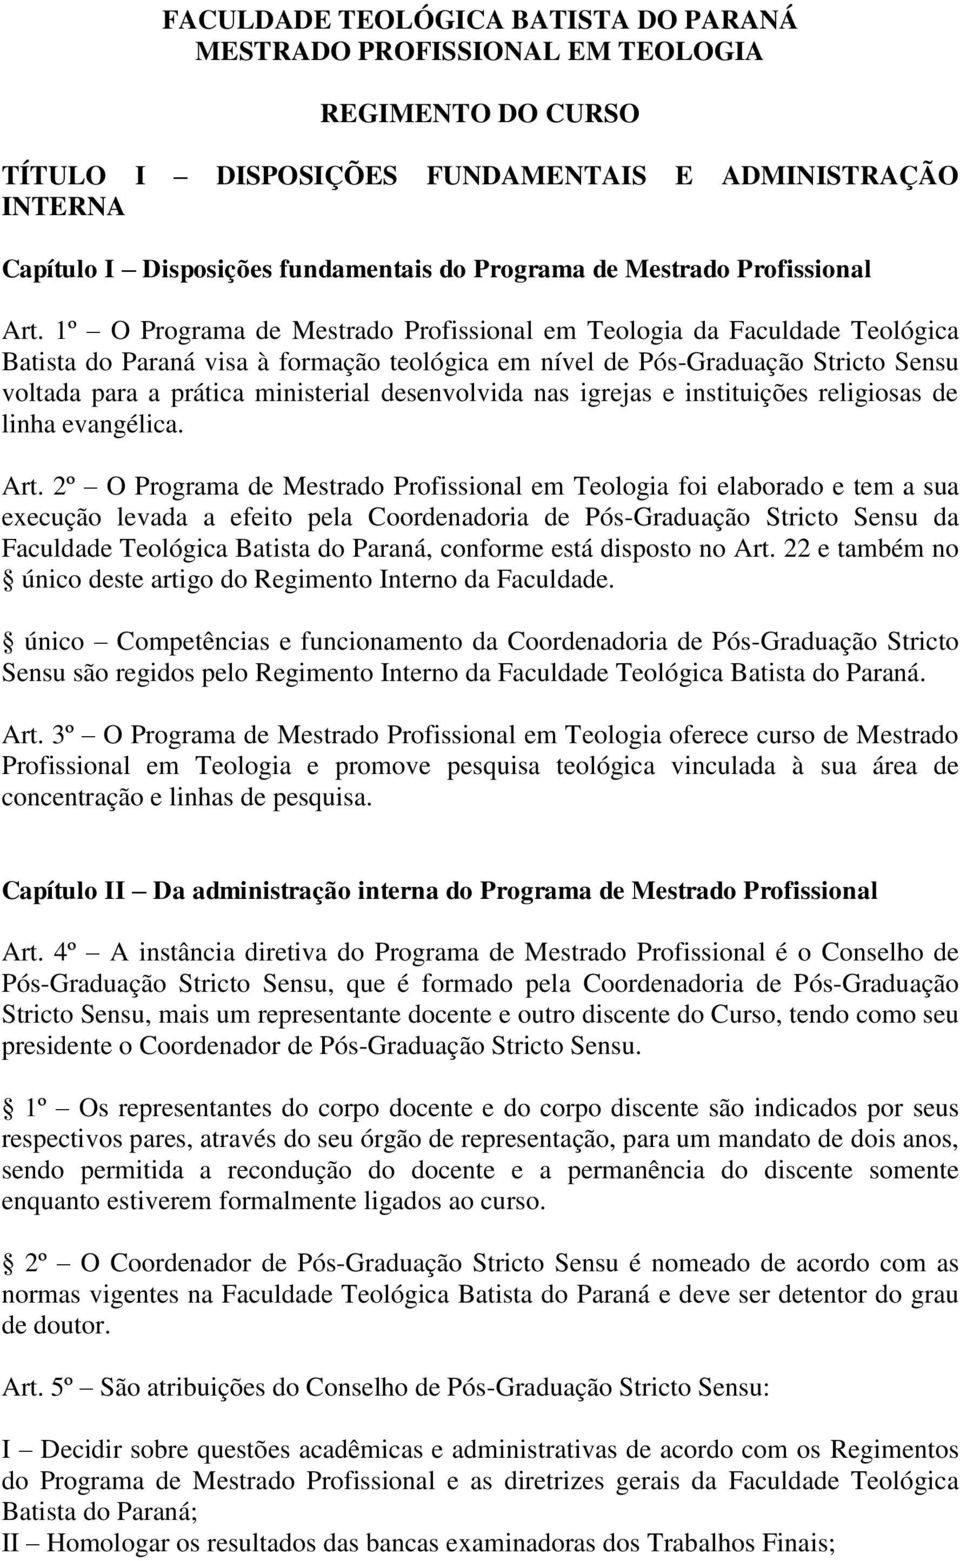 1º O Programa de Mestrado Profissional em Teologia da Faculdade Teológica Batista do Paraná visa à formação teológica em nível de Pós-Graduação Stricto Sensu voltada para a prática ministerial